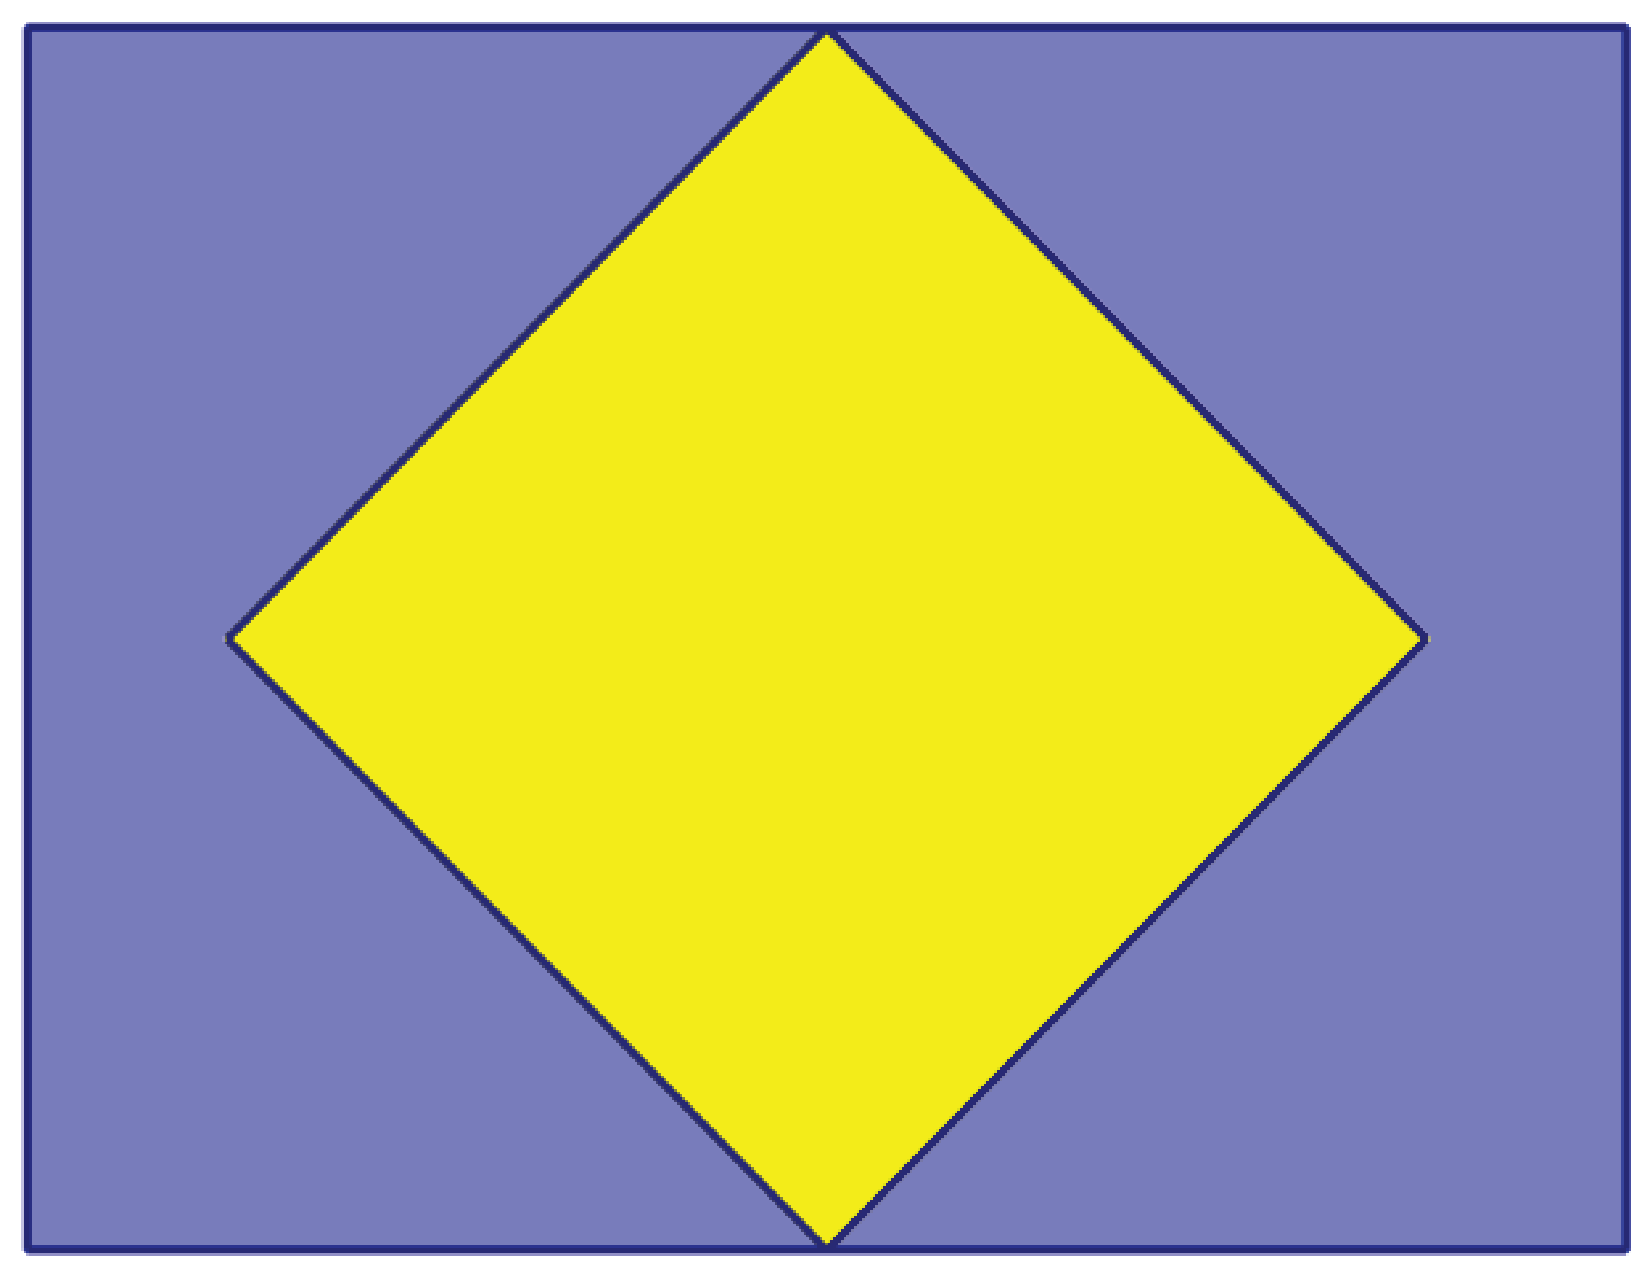 Na slici je kvadrat upisan unutar pravokutnika tako da su dijagonale kvadrata paralelne stranicama pravokutnika i da dva nasuprotna vrha kvadrata pripadaju duljim stranicama pravokutnika.